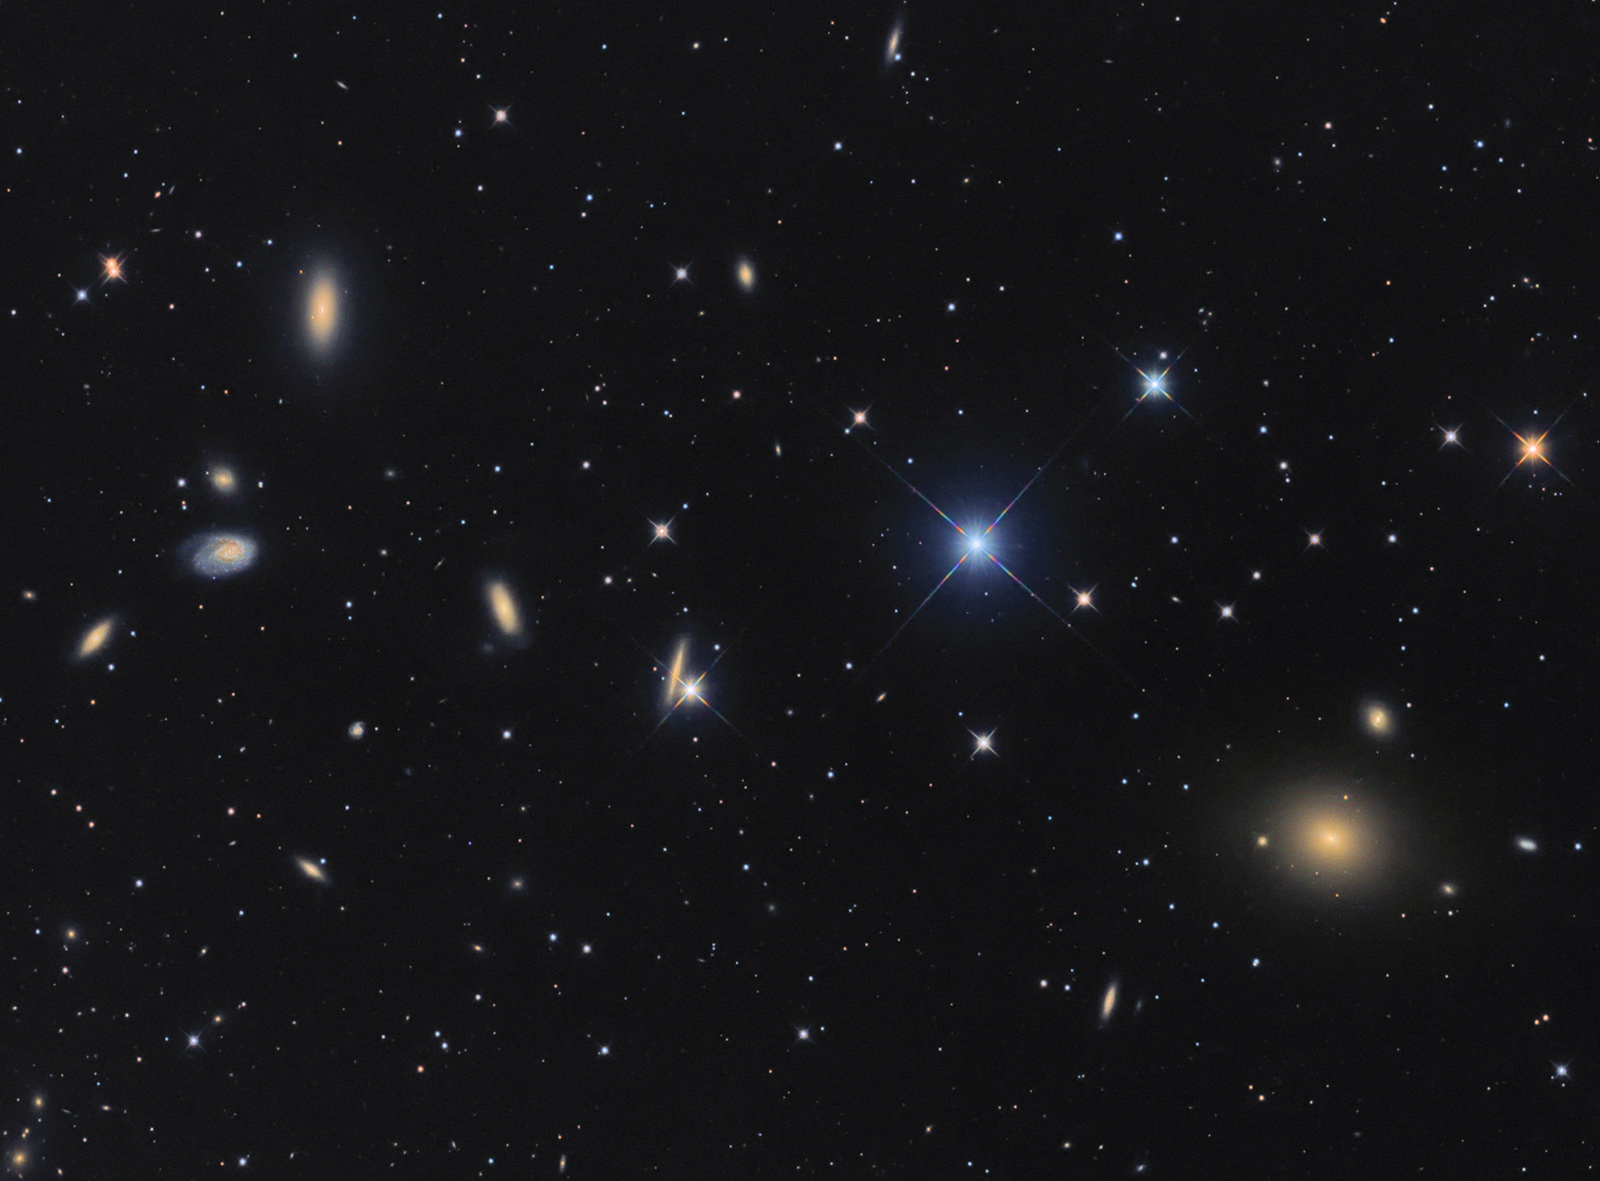 NGC 4261 group